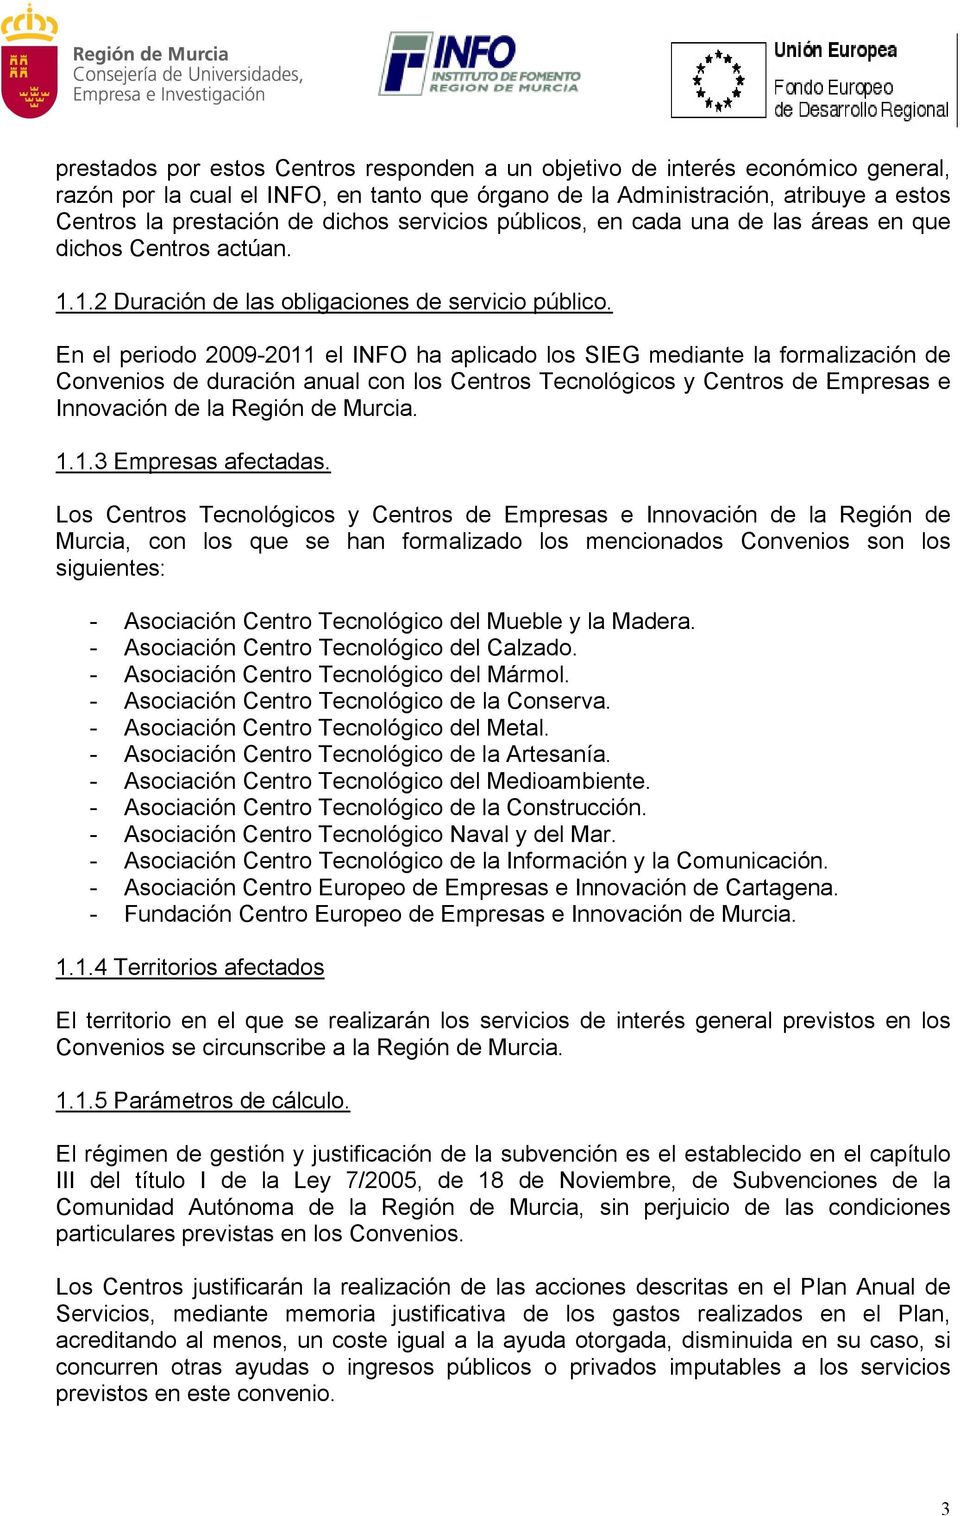 En el periodo 2009-2011 el INFO ha aplicado los SIEG mediante la formalización de Convenios de duración anual con los Centros Tecnológicos y Centros de Empresas e Innovación de la Región de Murcia. 1.